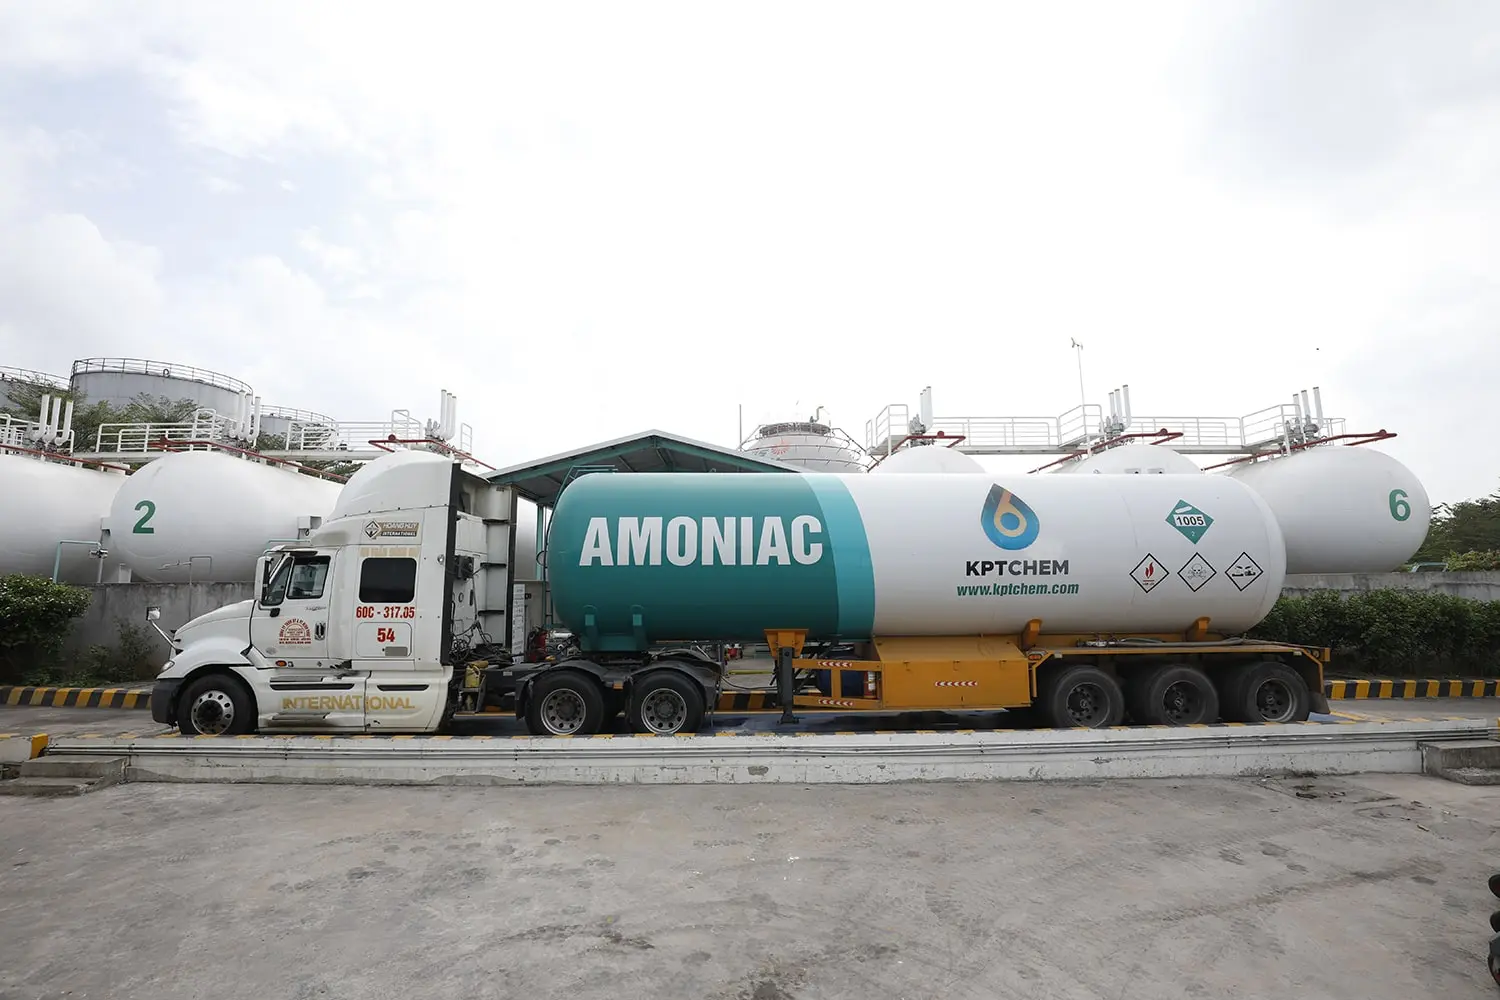 Vận chuyển hóa chất amoniac bằng xe bồn chuyên dụng của KPTCHEM